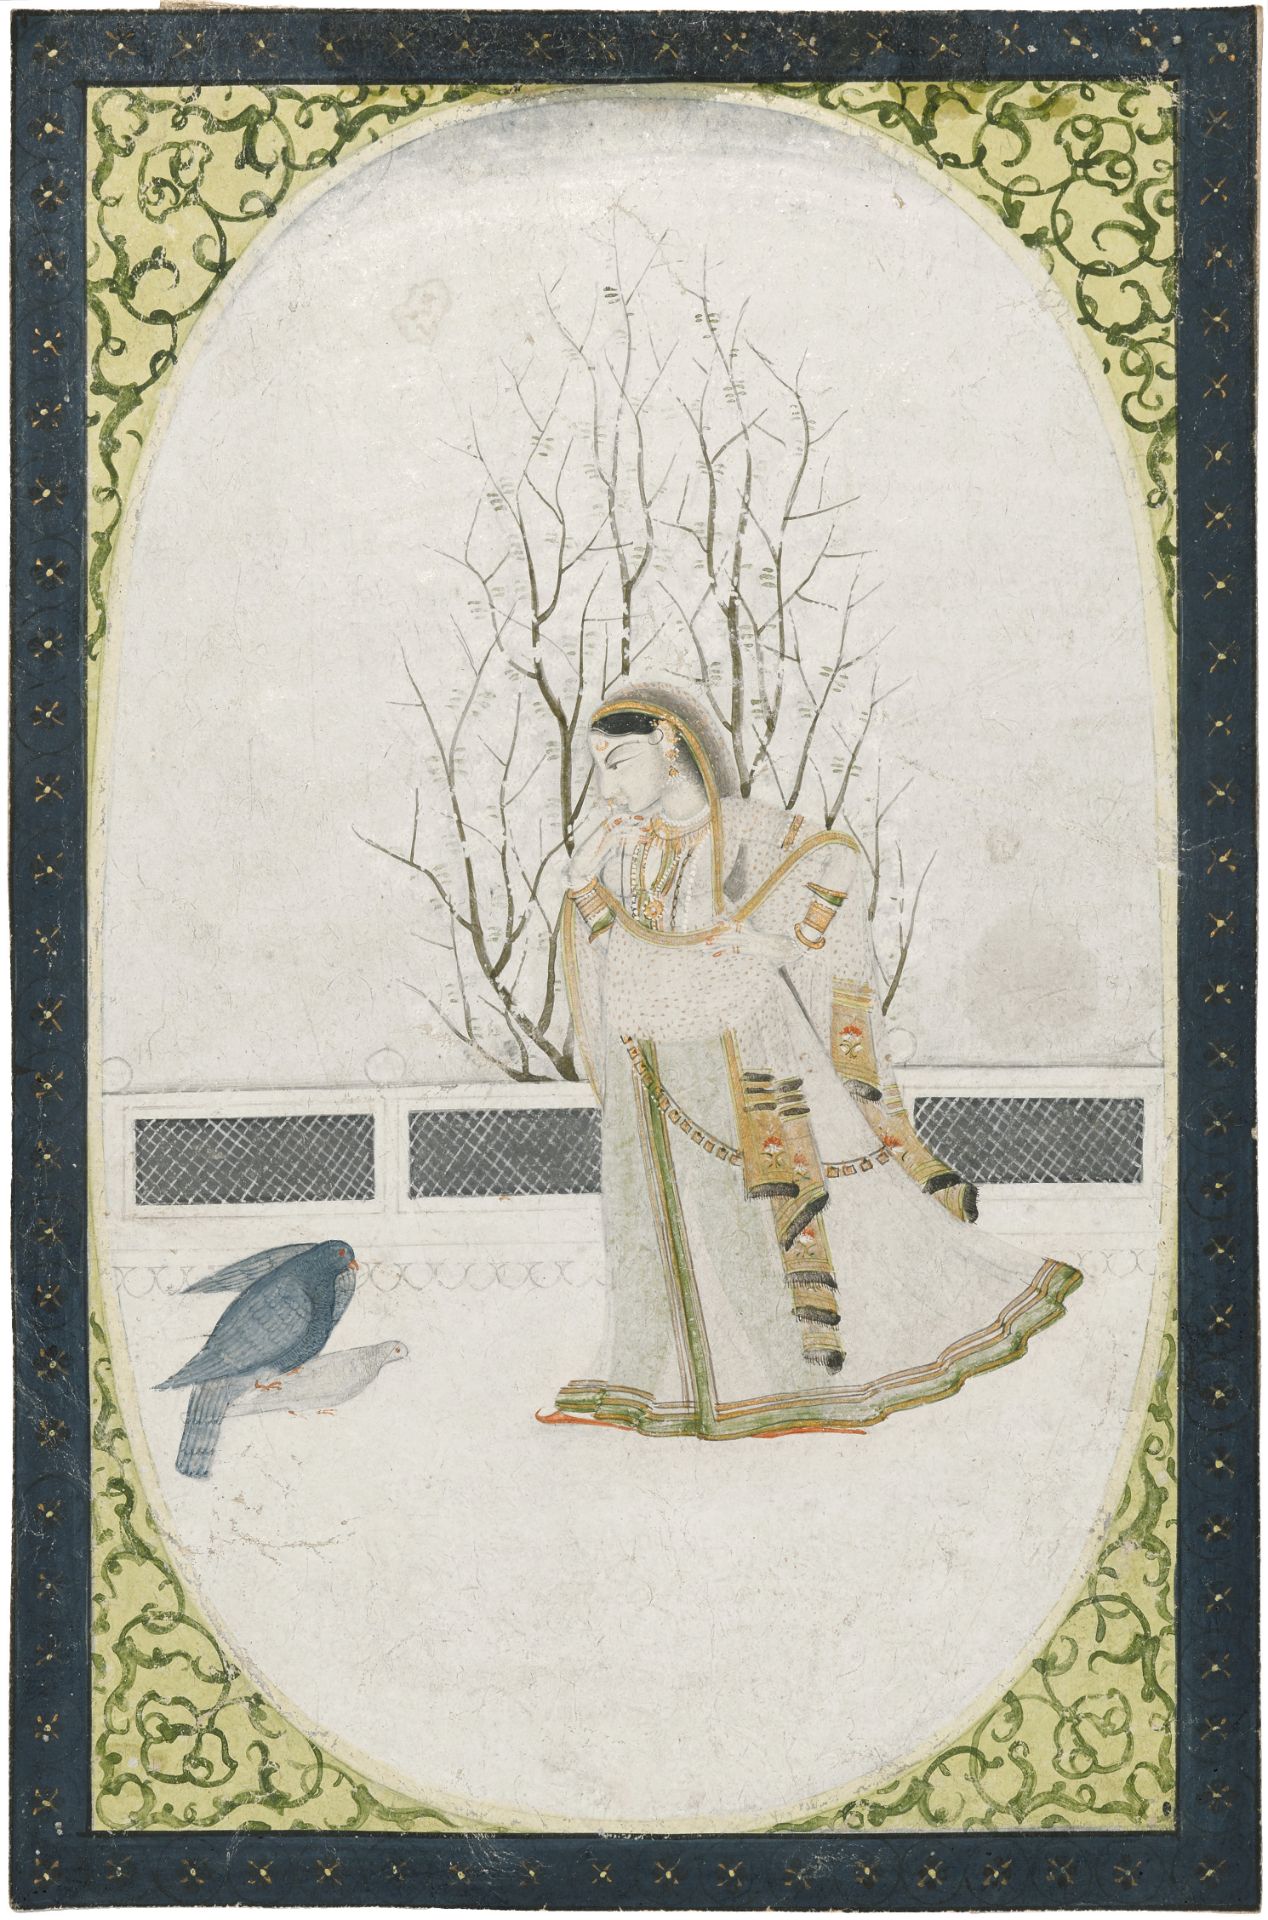 An illustration from a nayika series: Virhini nayika Guler or Kangra, circa 1800